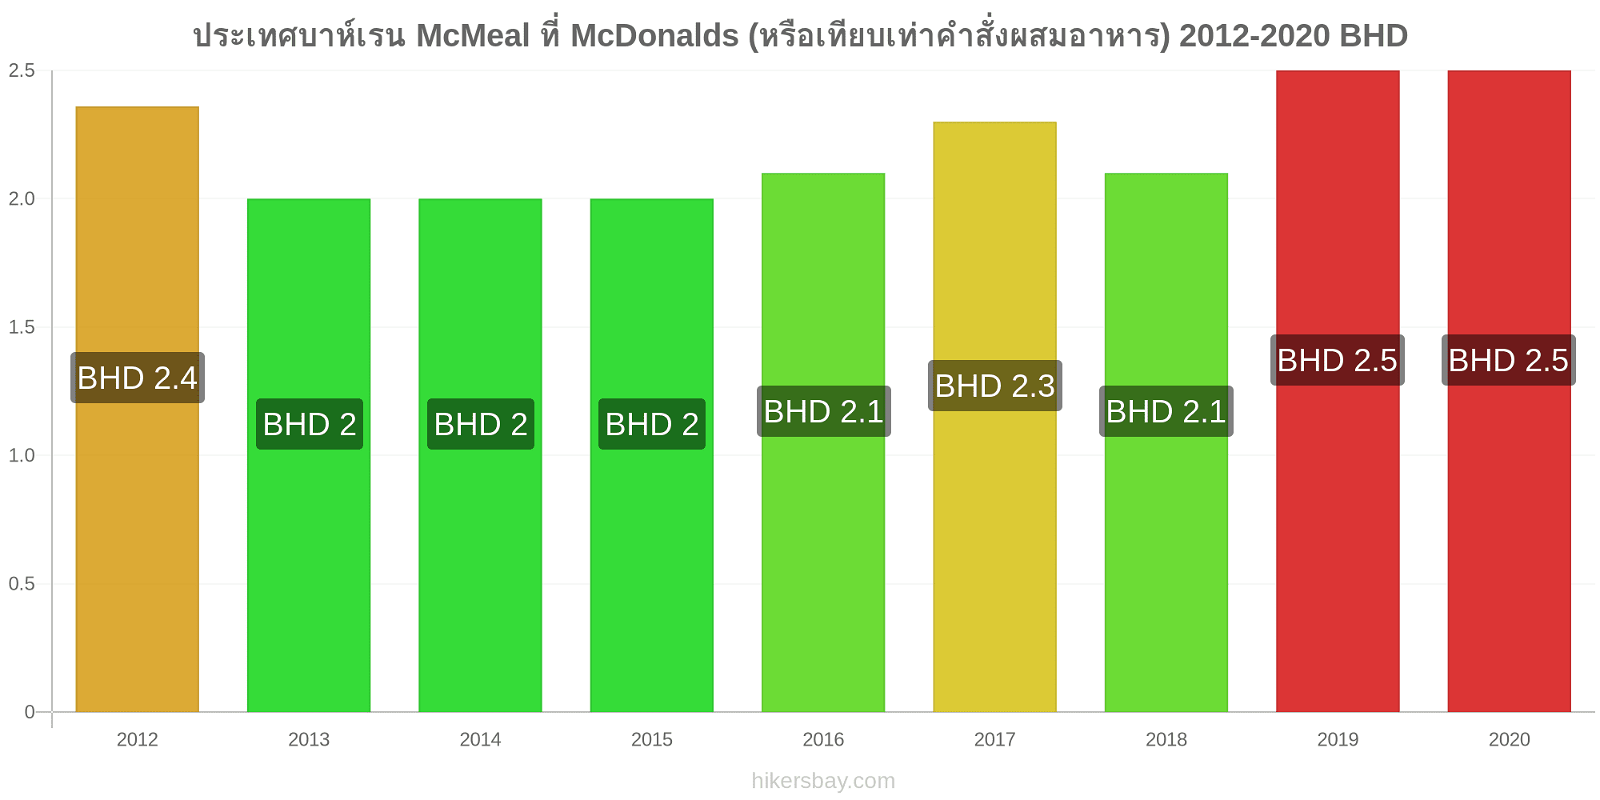 ประเทศบาห์เรน การเปลี่ยนแปลงราคา McMeal ที่ McDonalds (หรือเทียบเท่าคำสั่งผสมอาหาร) hikersbay.com